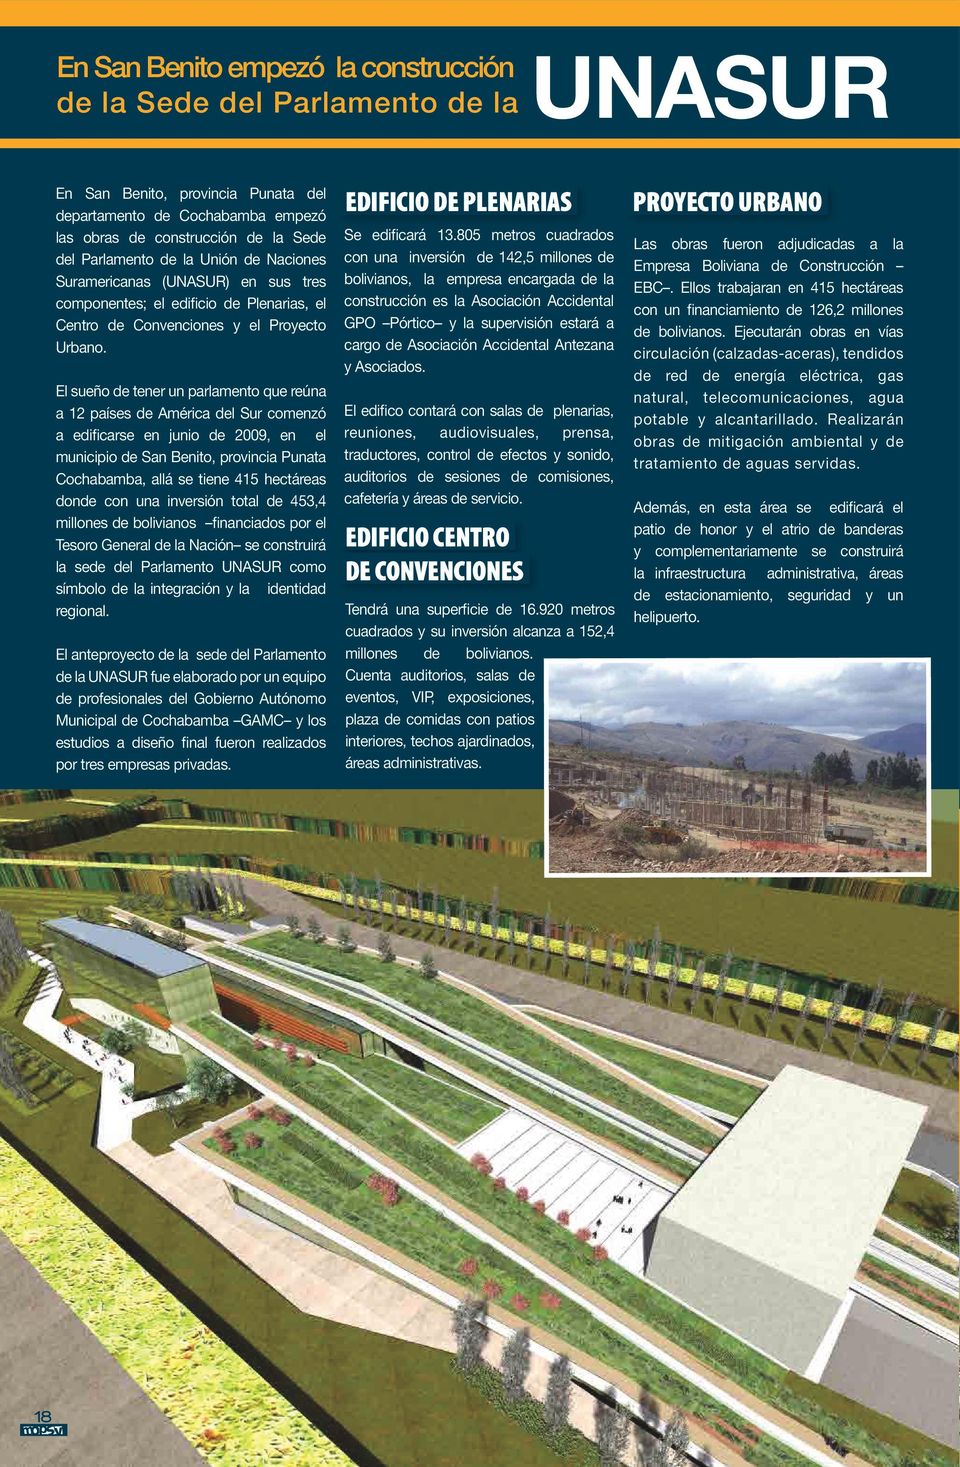 El sueño de tener un parlamento que reúna a 12 países de América del Sur comenzó a edificarse en junio de 2009, en el municipio de San Benito, provincia Punata Cochabamba, allá se tiene 415 hectáreas